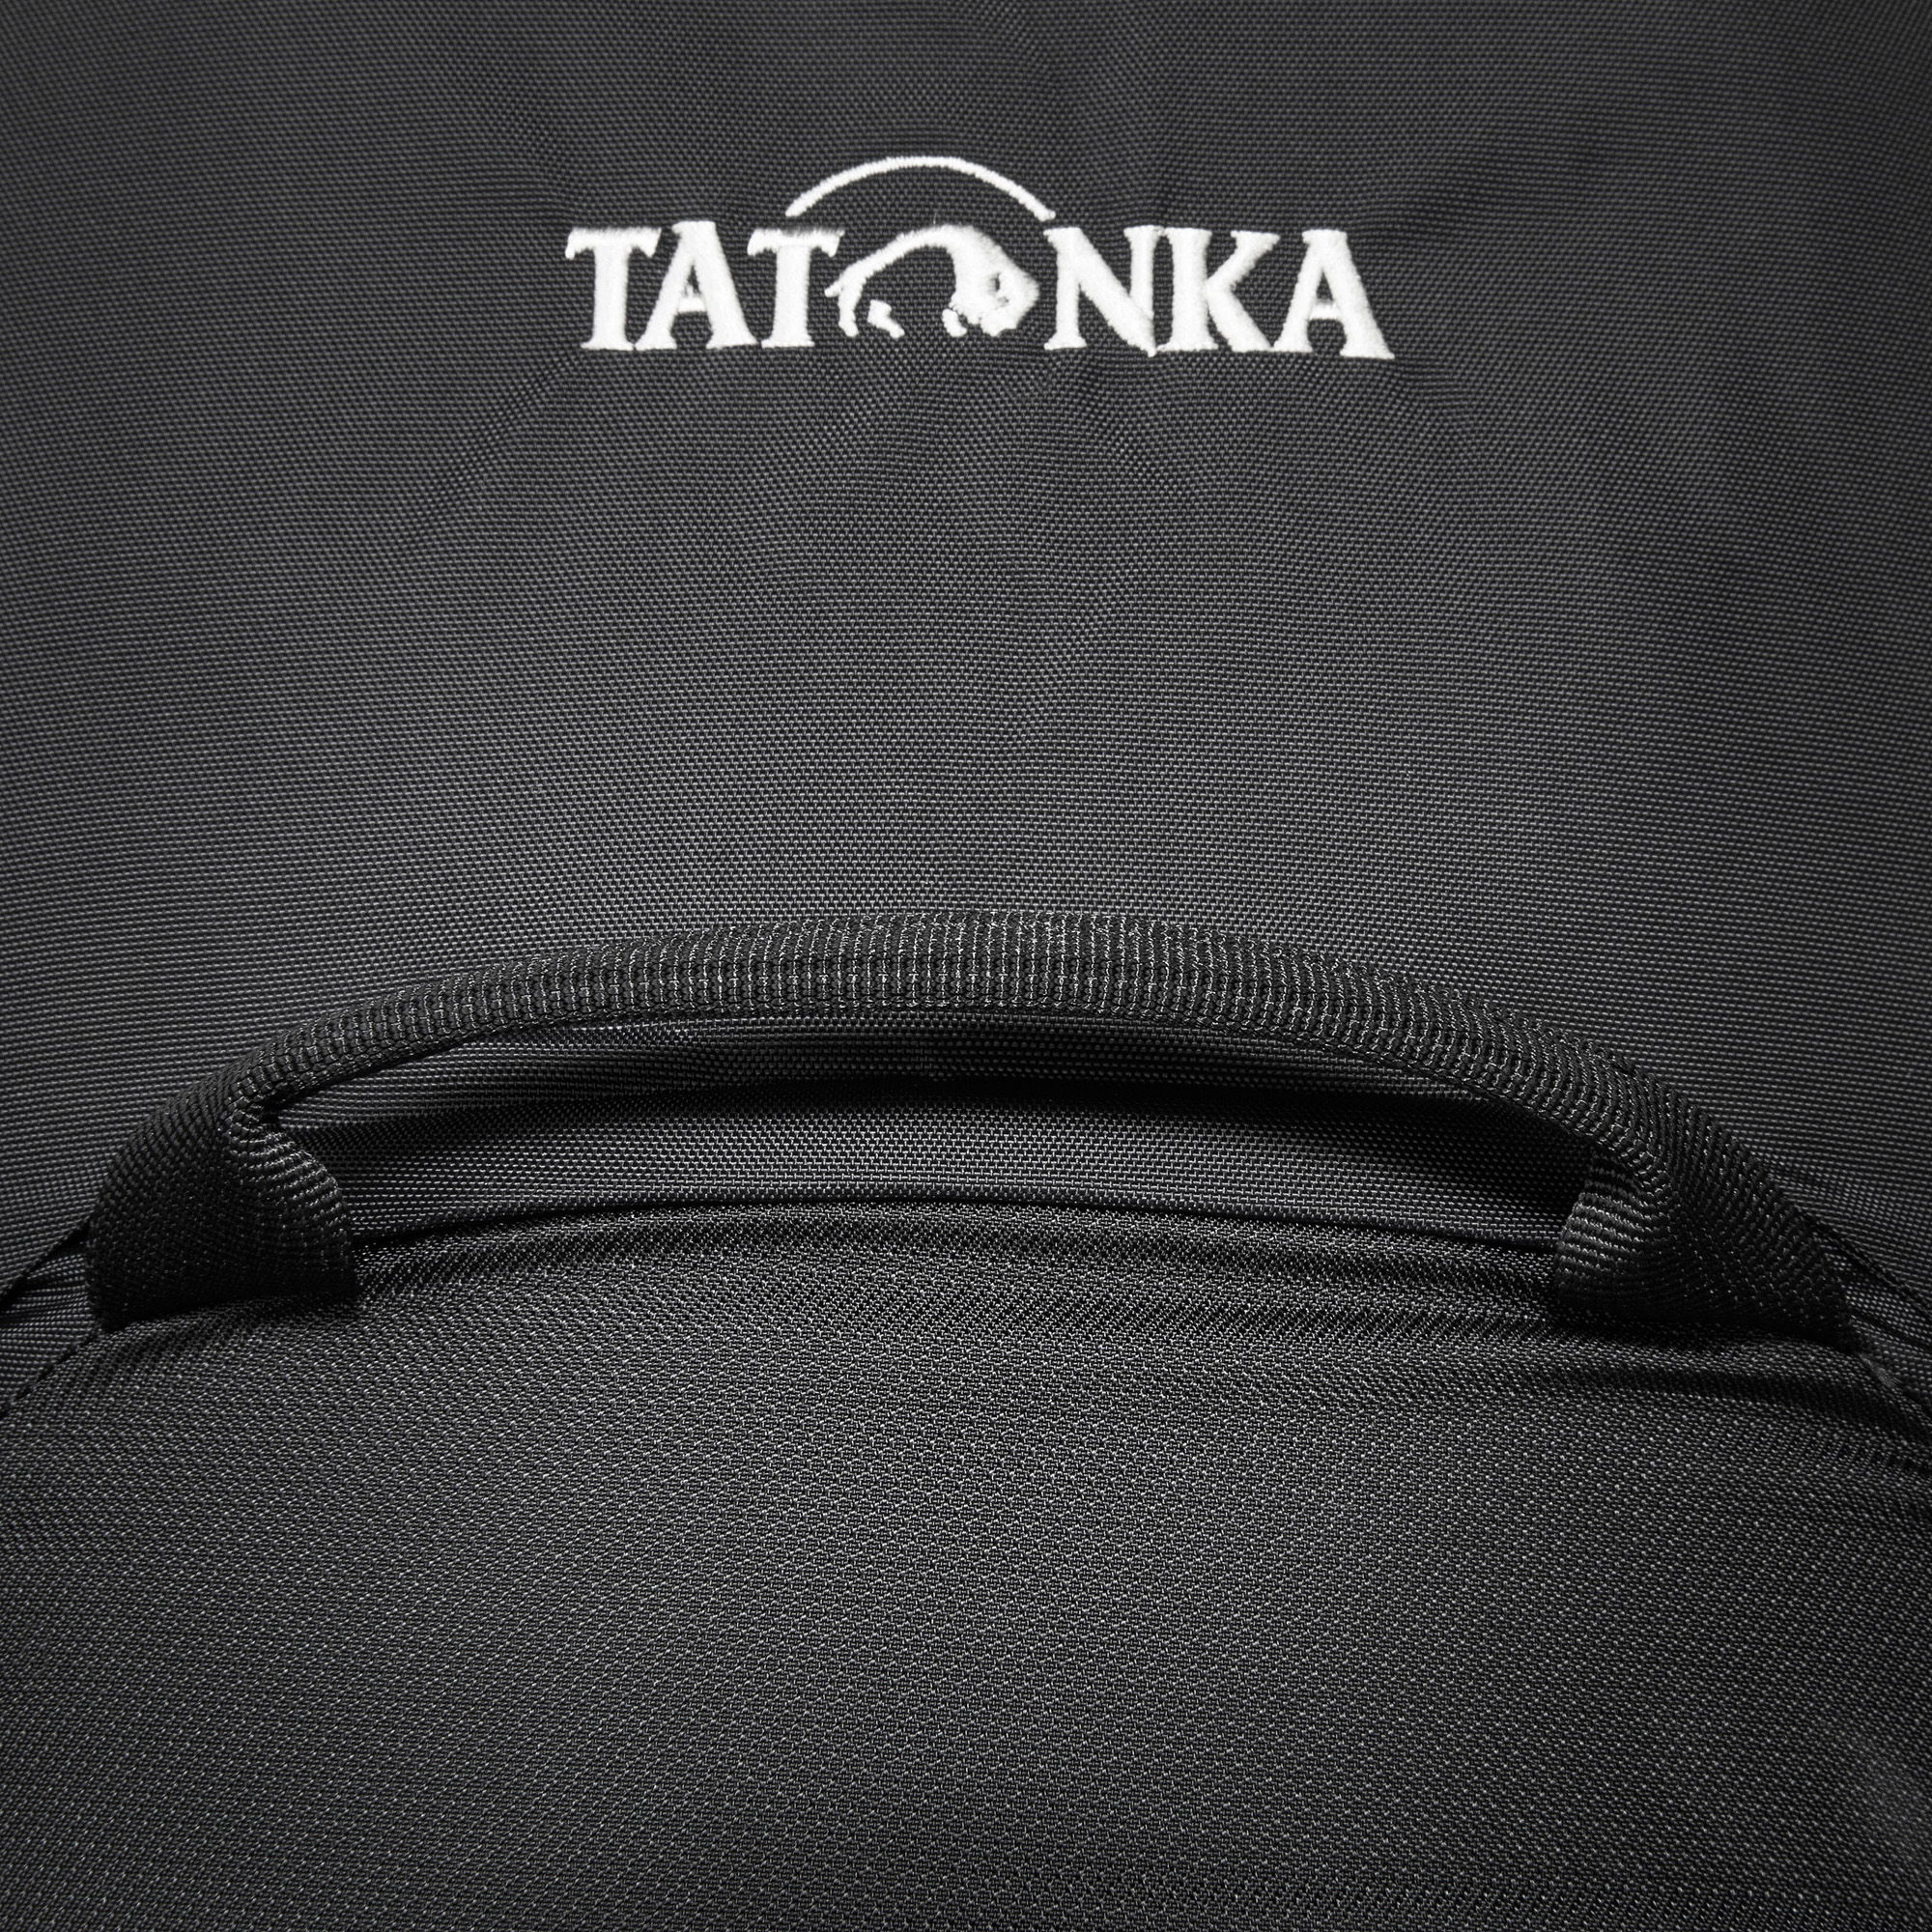 Tatonka Akela 45 black schwarz Tourenrucksäcke 4013236383577